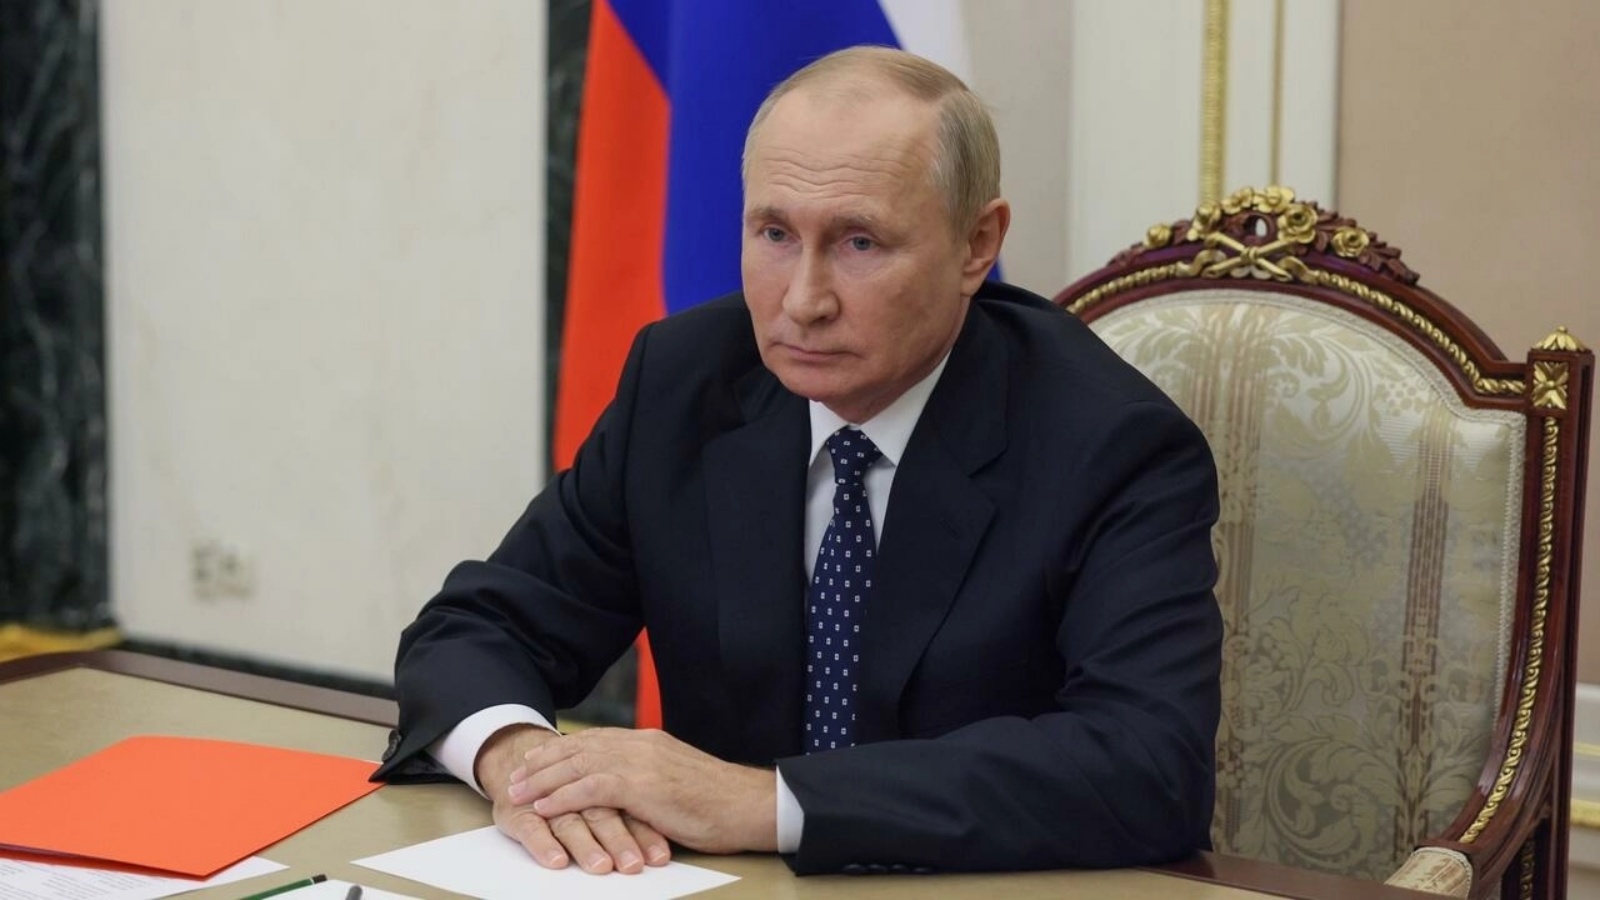 الرئيس الروسي فلاديمير بوتين يترأس اجتماعًا لمجلس الأمن عبر رابط فيديو في موسكو في 23 سبتمبر 2022